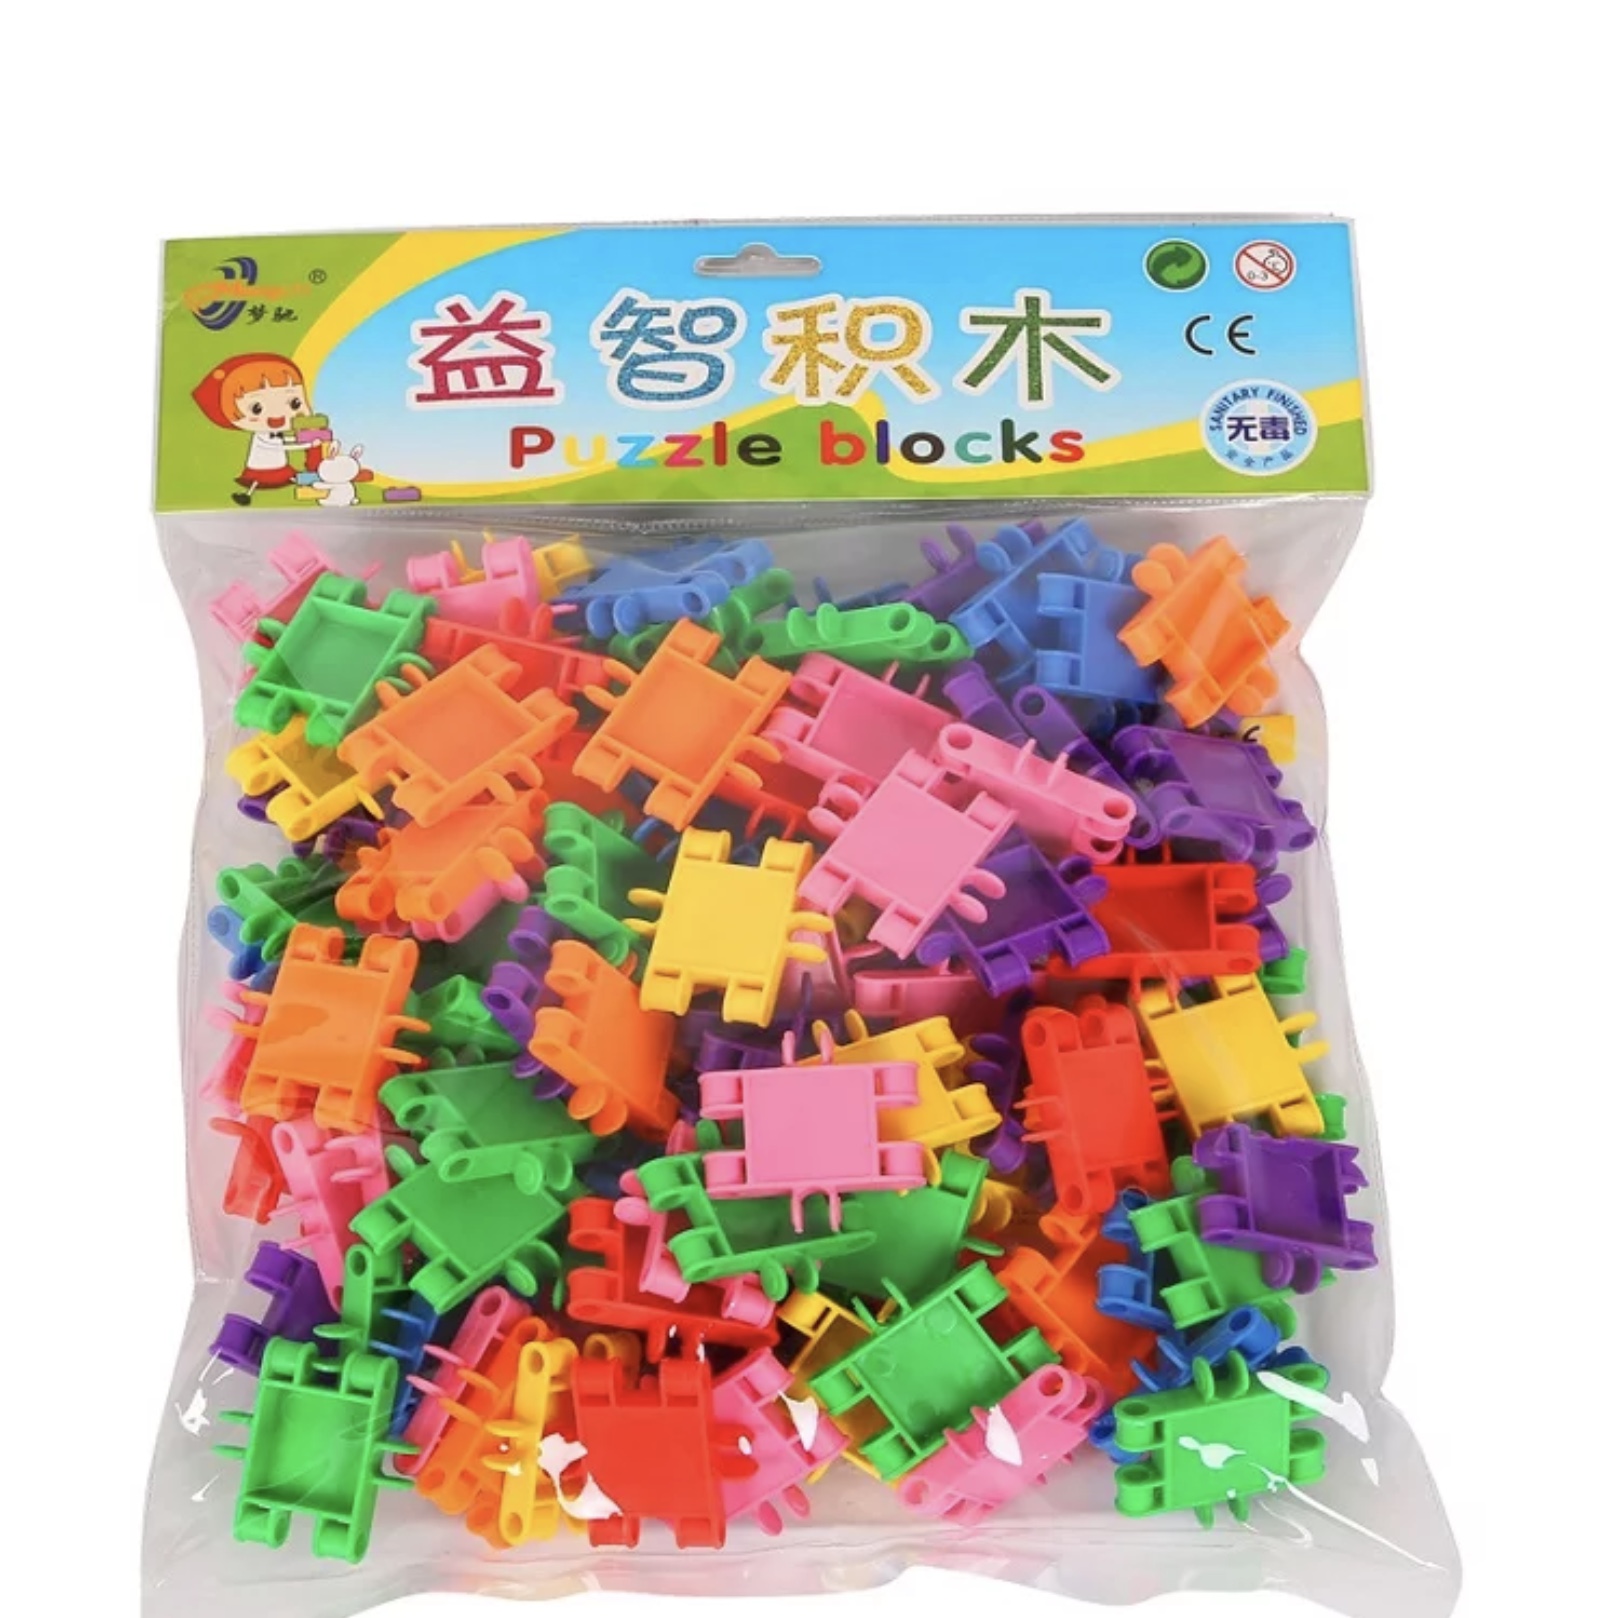 Set de construcții din plastic educativ pentru copii de vârsta trei ani + se pot construi diverse forme de jocuri pentru stimularea creativității copilului